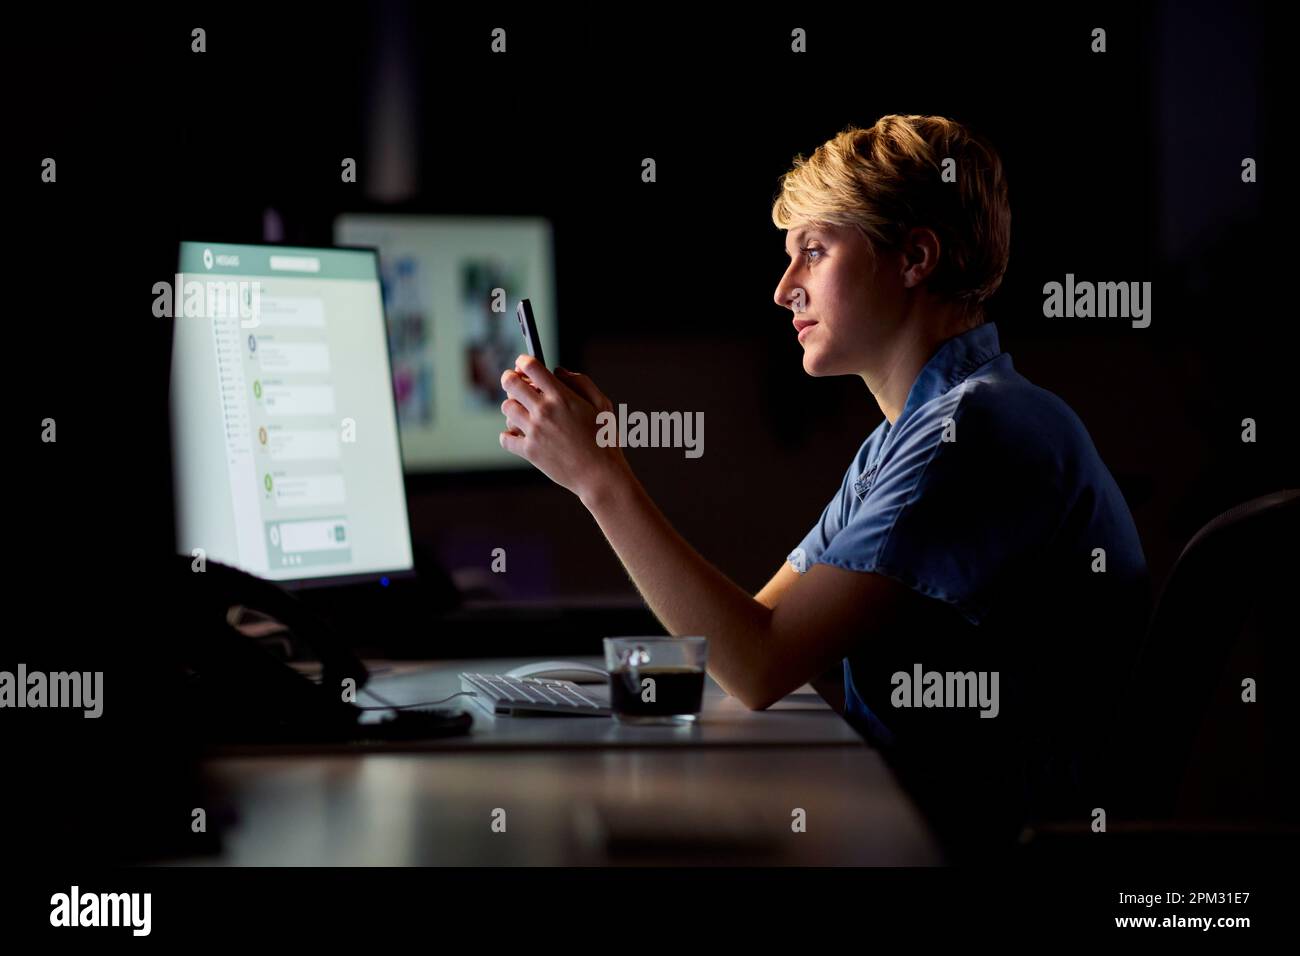 Empresaria que trabaja tarde en la oficina con la cara iluminada por la pantalla de la computadora usando el teléfono móvil Foto de stock